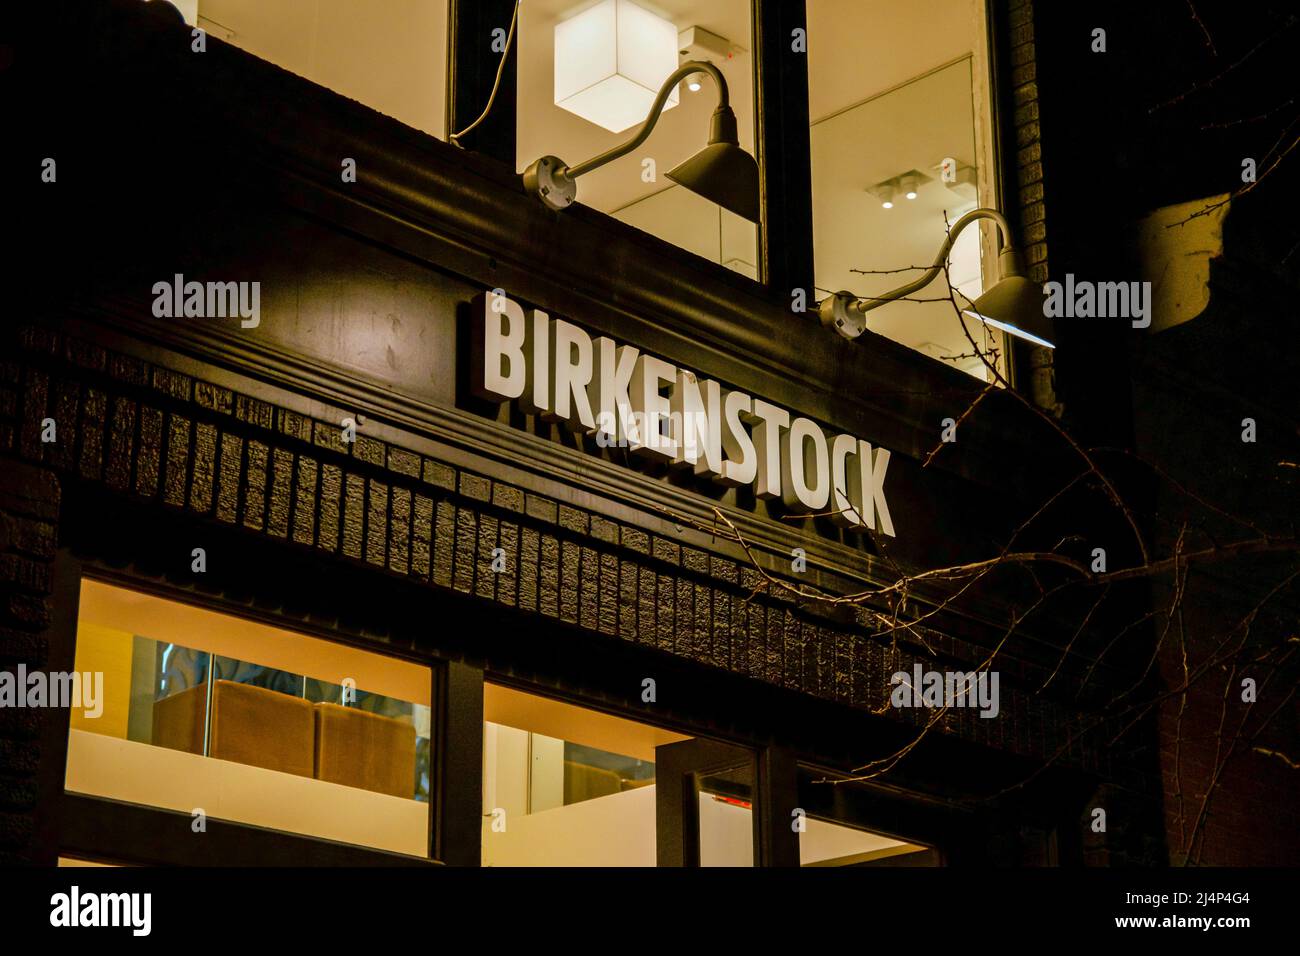 Tienda de birkenstock alemania fotografías e imágenes de alta resolución -  Alamy